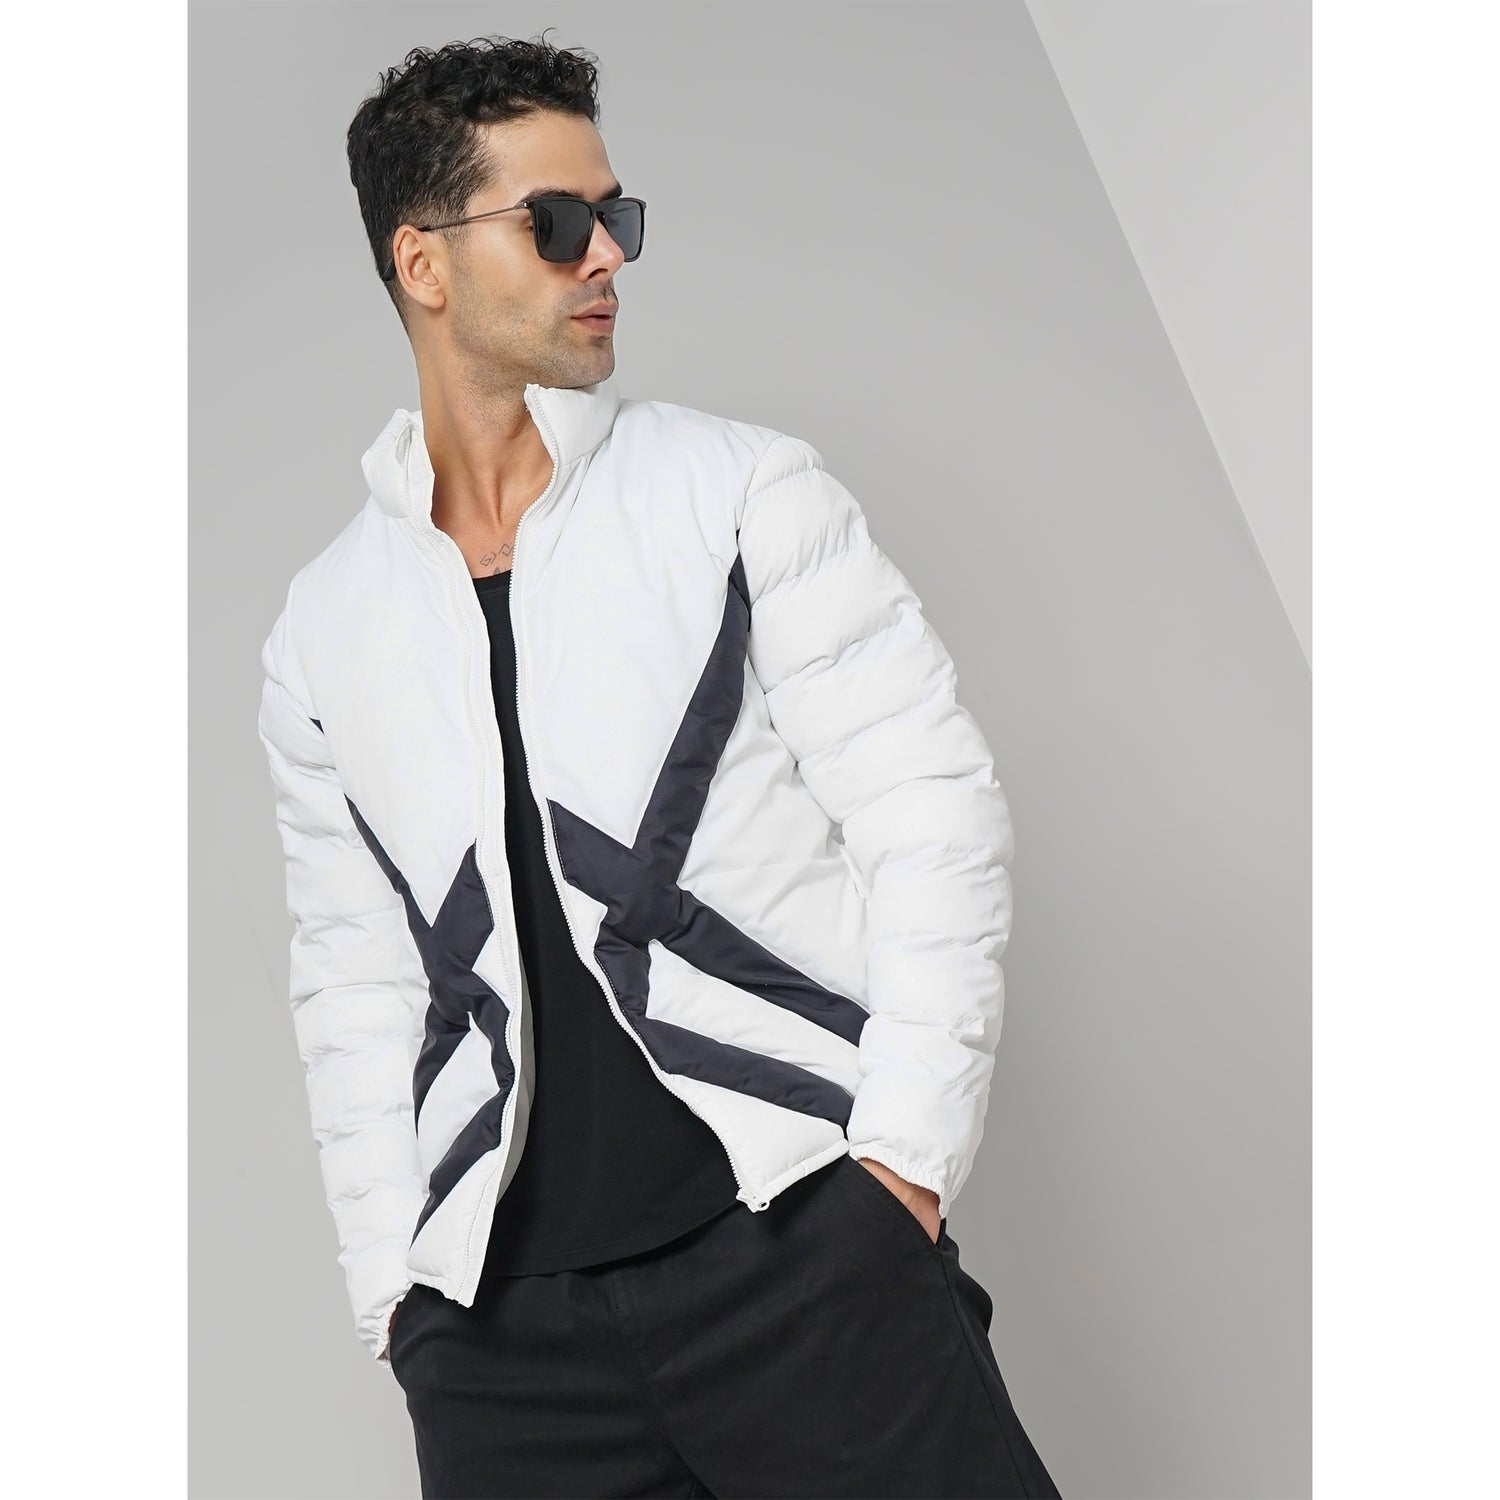 Men's White Printed Regular Fit Polyester Puffy Jacket (FURHOMBUS)